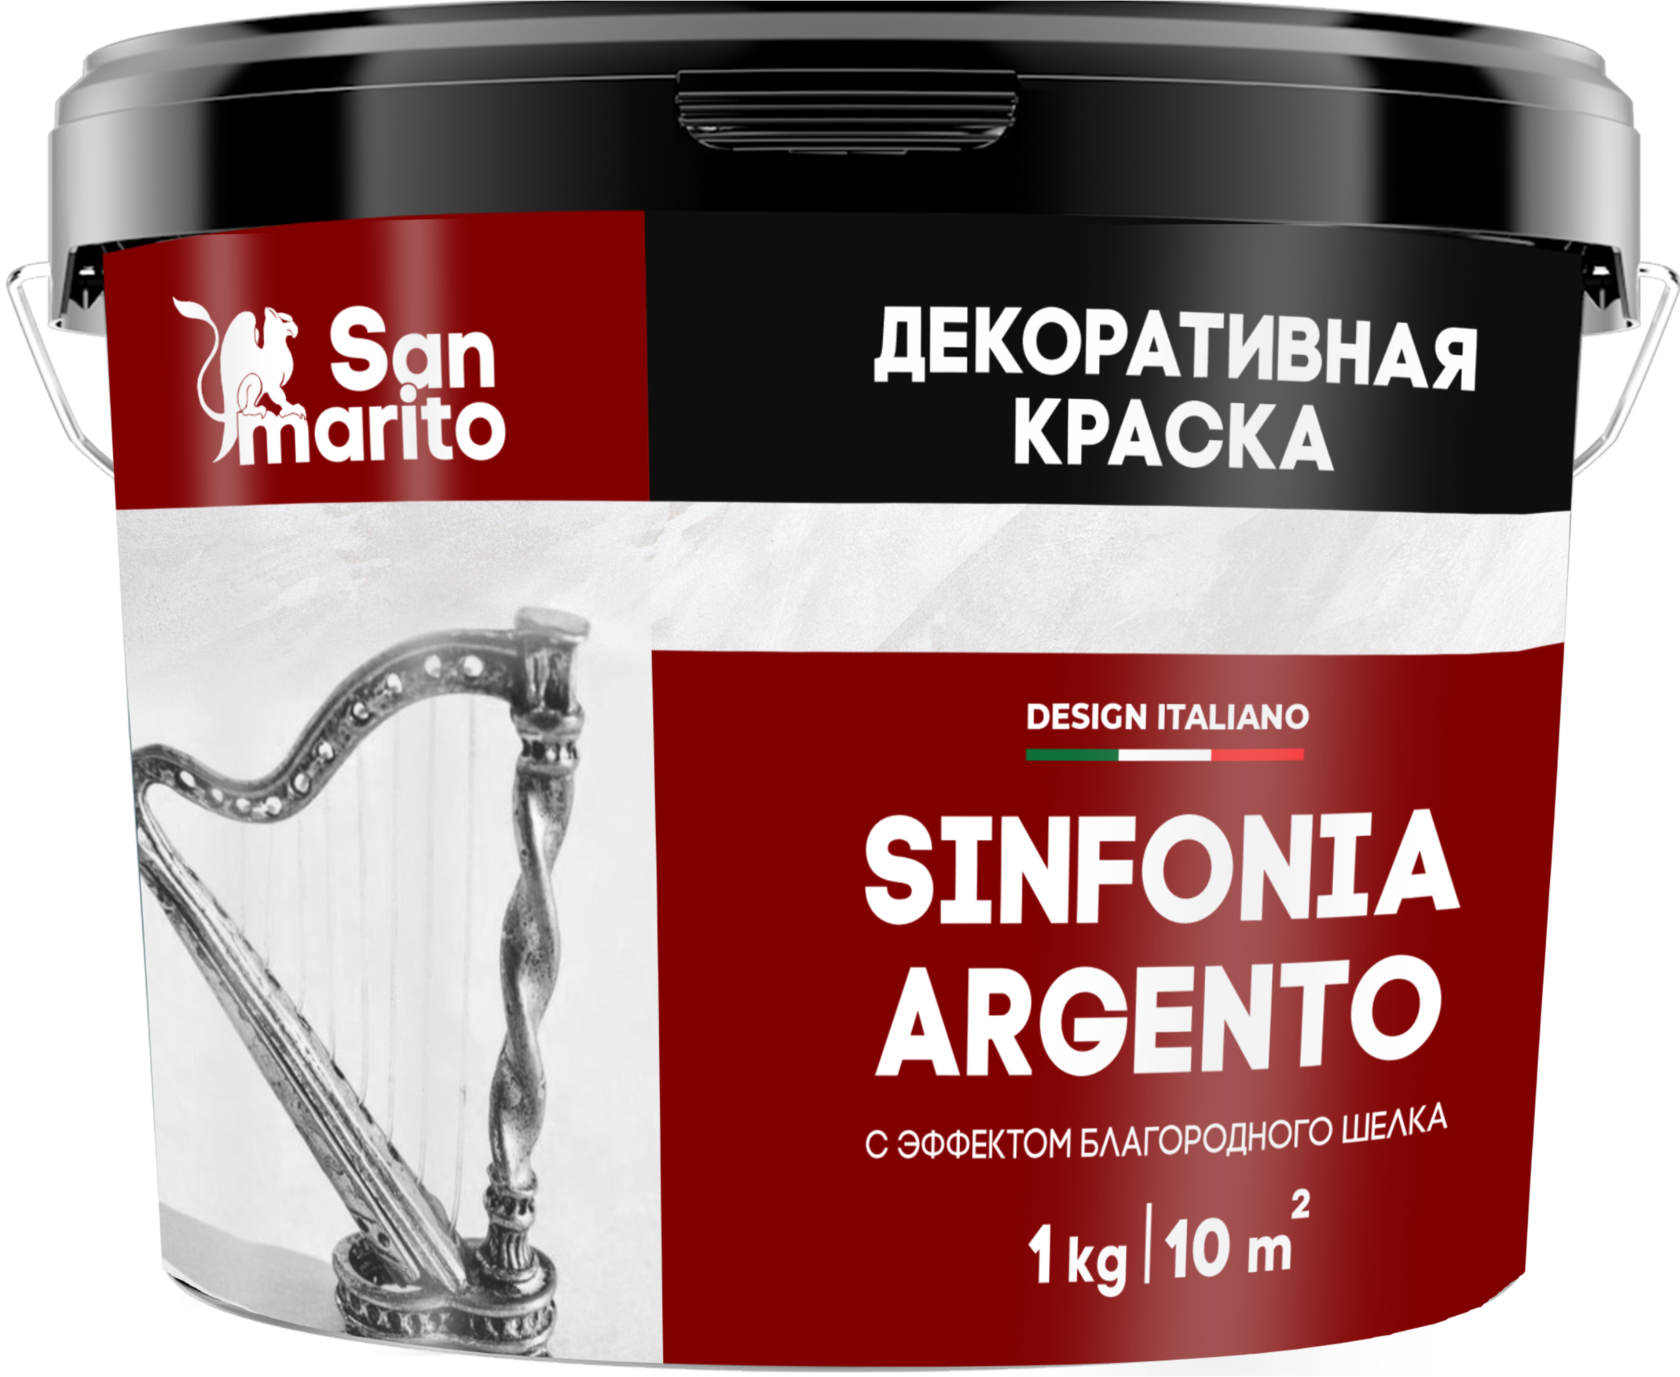 Краска декоративная с эффектом благородного шелка "San Marito Sinfonia Argento" 5 кг